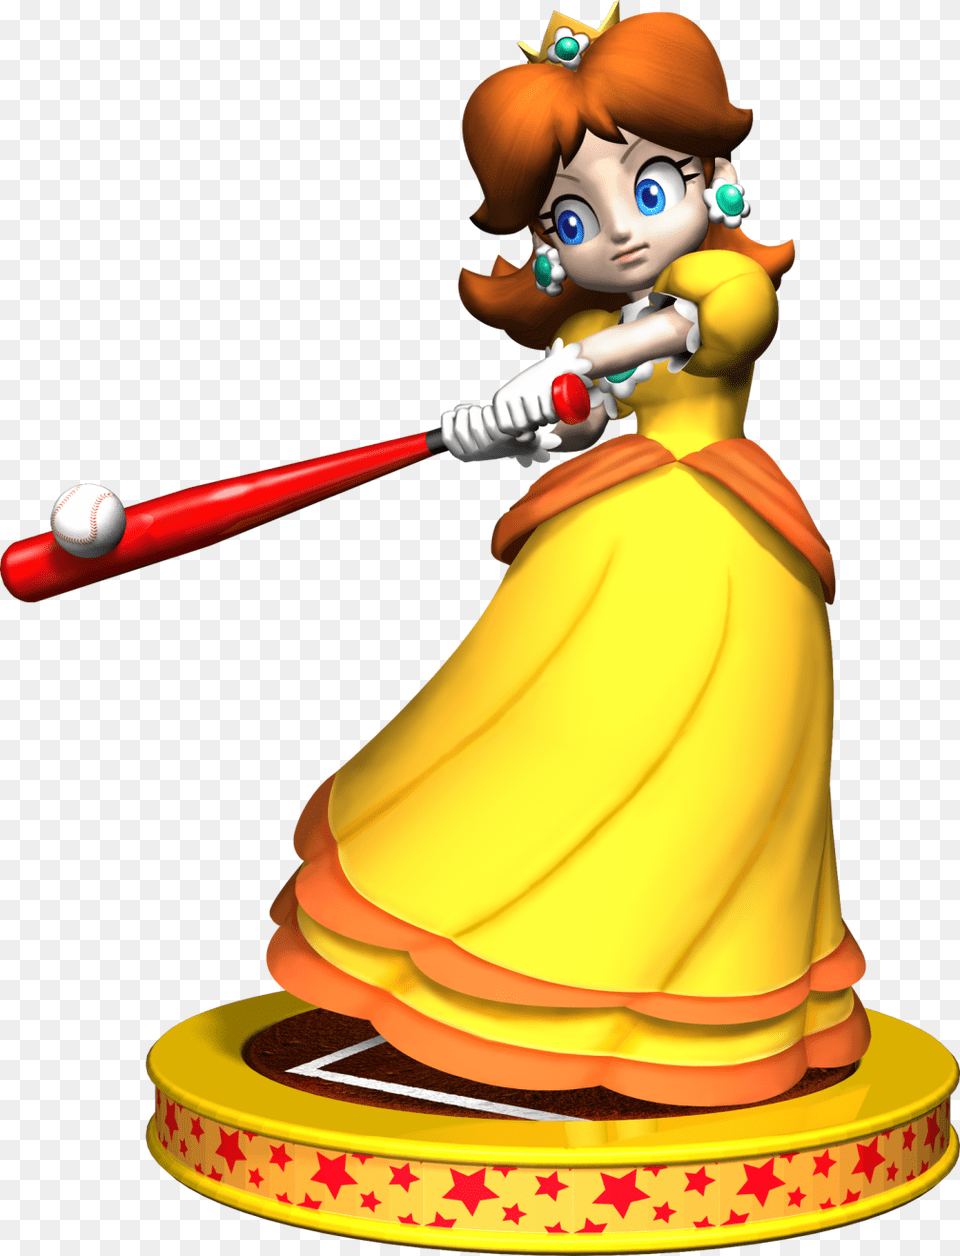 Princess Daisy Mario Party, Ball, Baseball, Baseball (ball), Sport Png Image